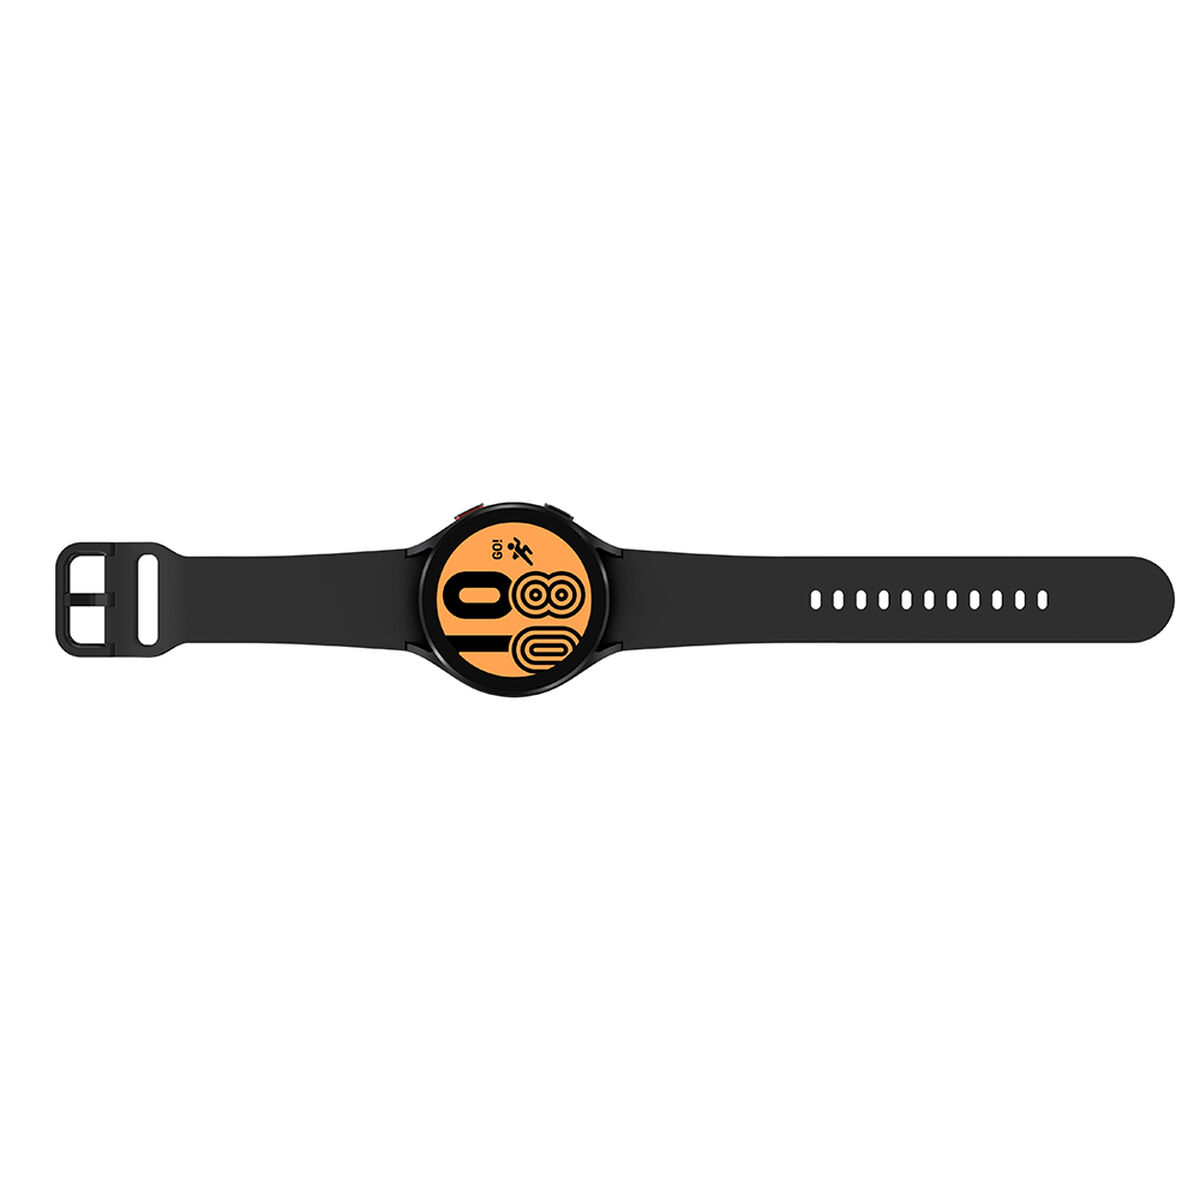 Smartwatch Samsung Galaxy Watch4 LTE 44mm Black